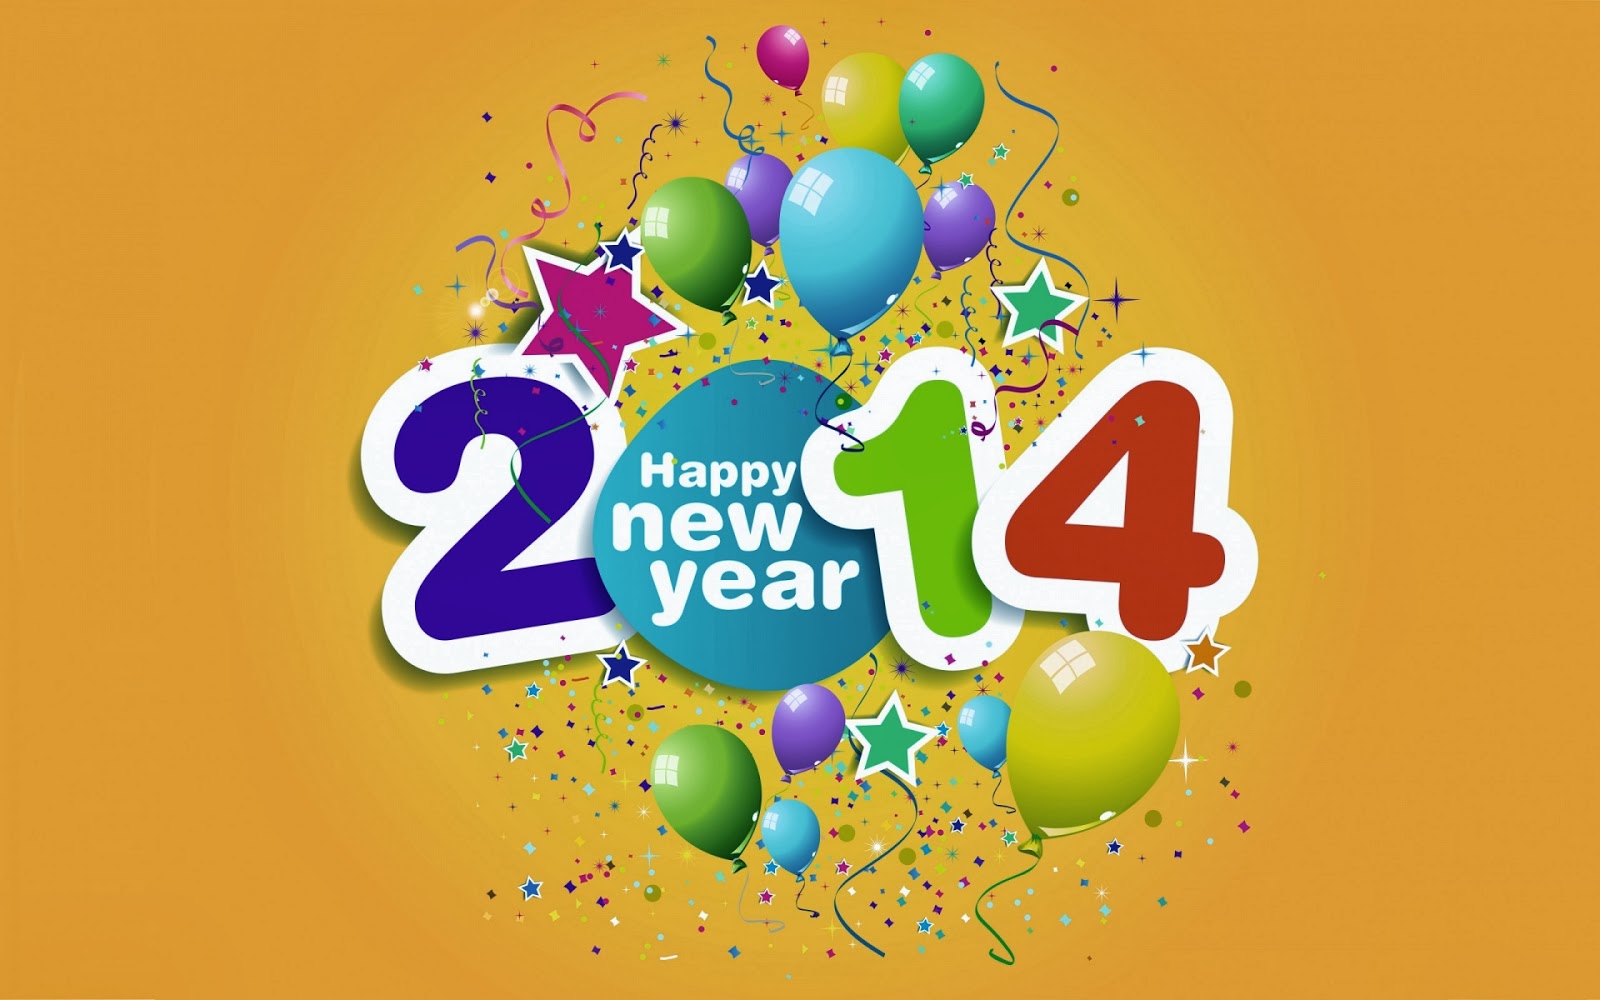 Happy New Year 2014 Clip Art   Happy Holidays 2014